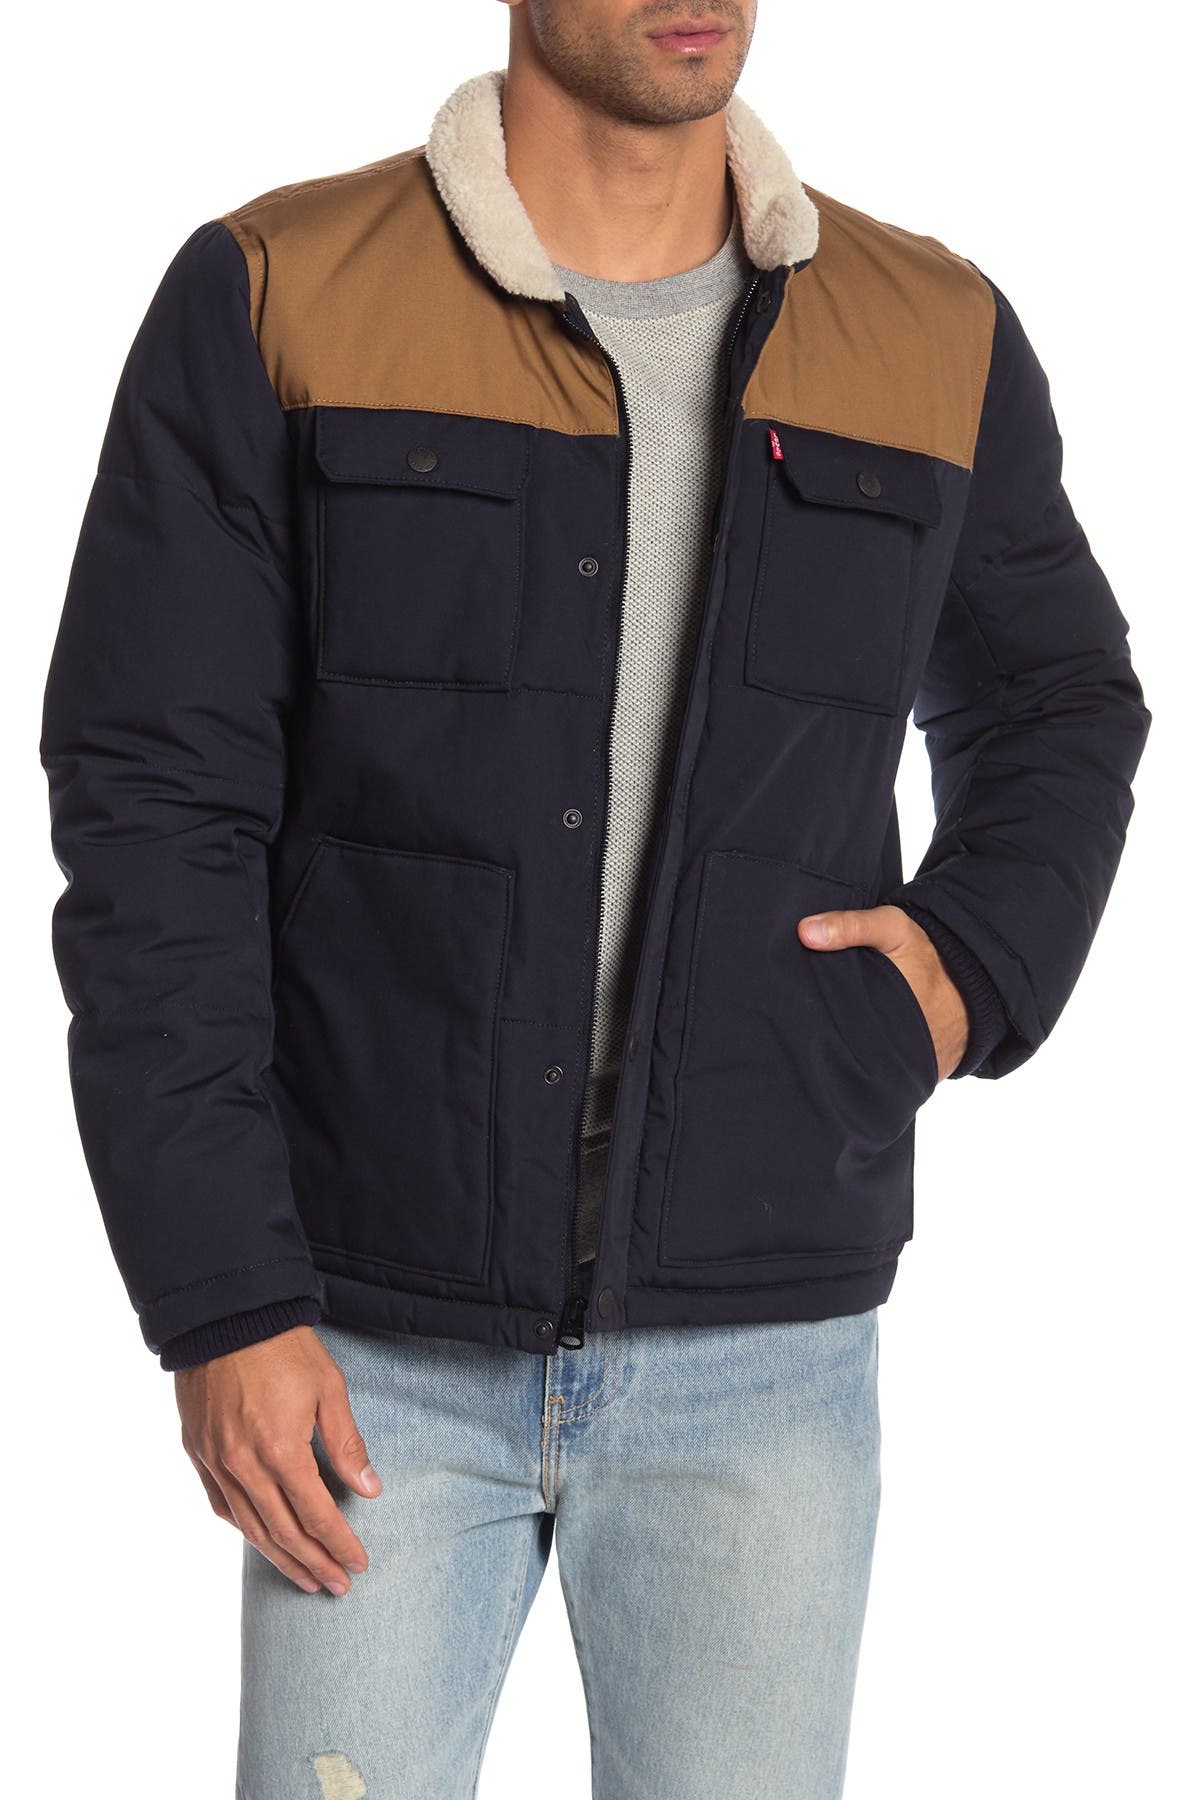 levi's woodsman jacket